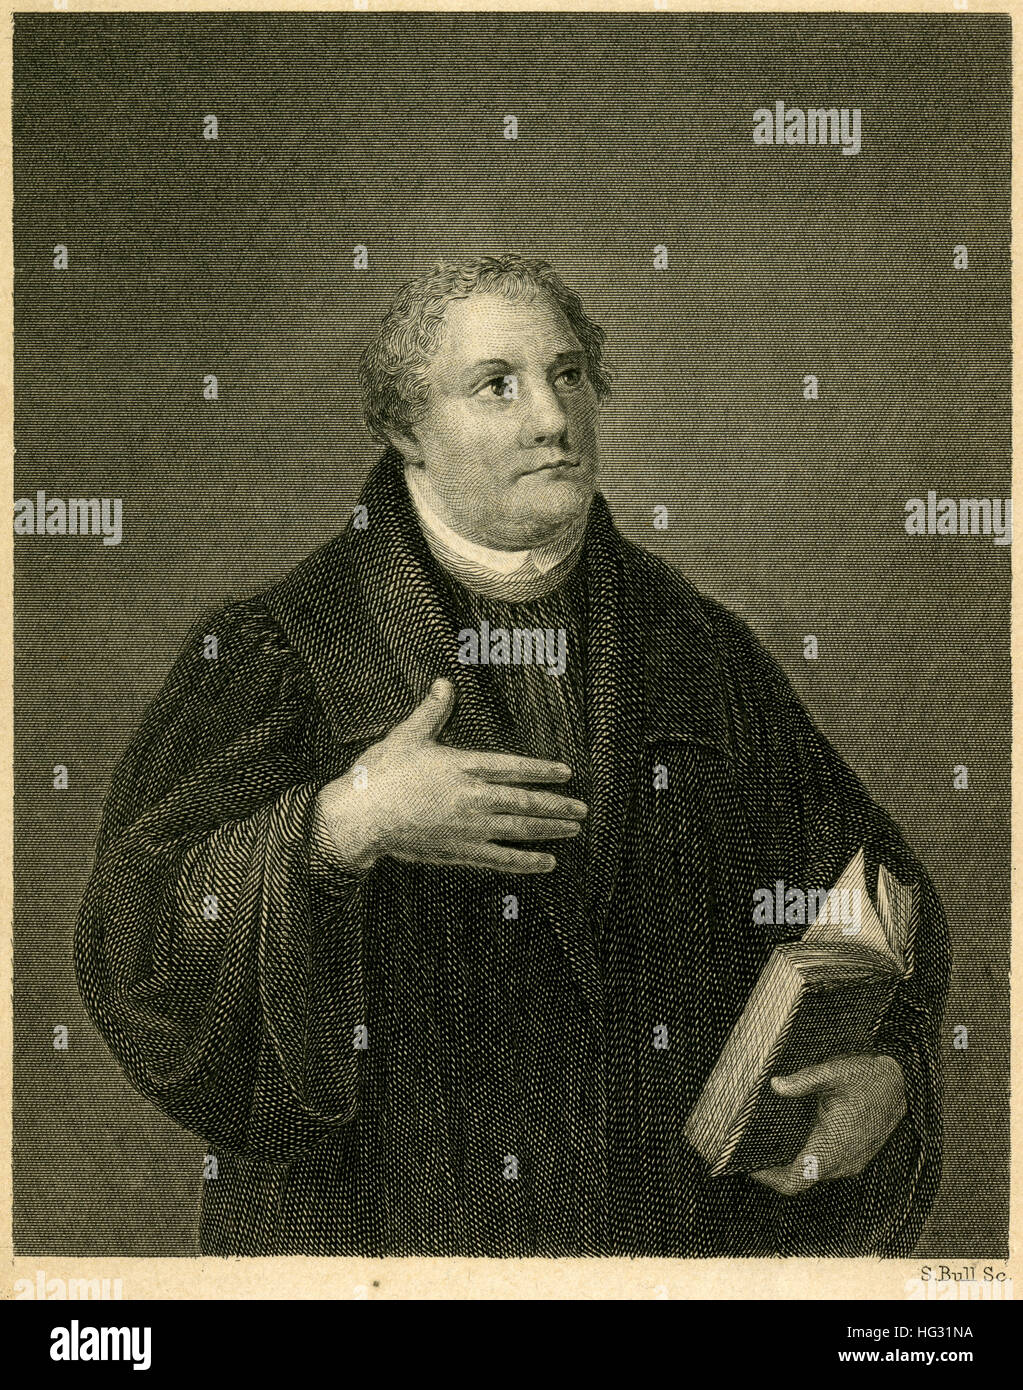 Antique c1840 grabado, Dr. Martin Luther. Martín Lutero (1483-1546) fue un profesor alemán de teología, compositor, sacerdote, monje y una figura seminal en la Reforma Protestante. Fuente: grabado original. Foto de stock